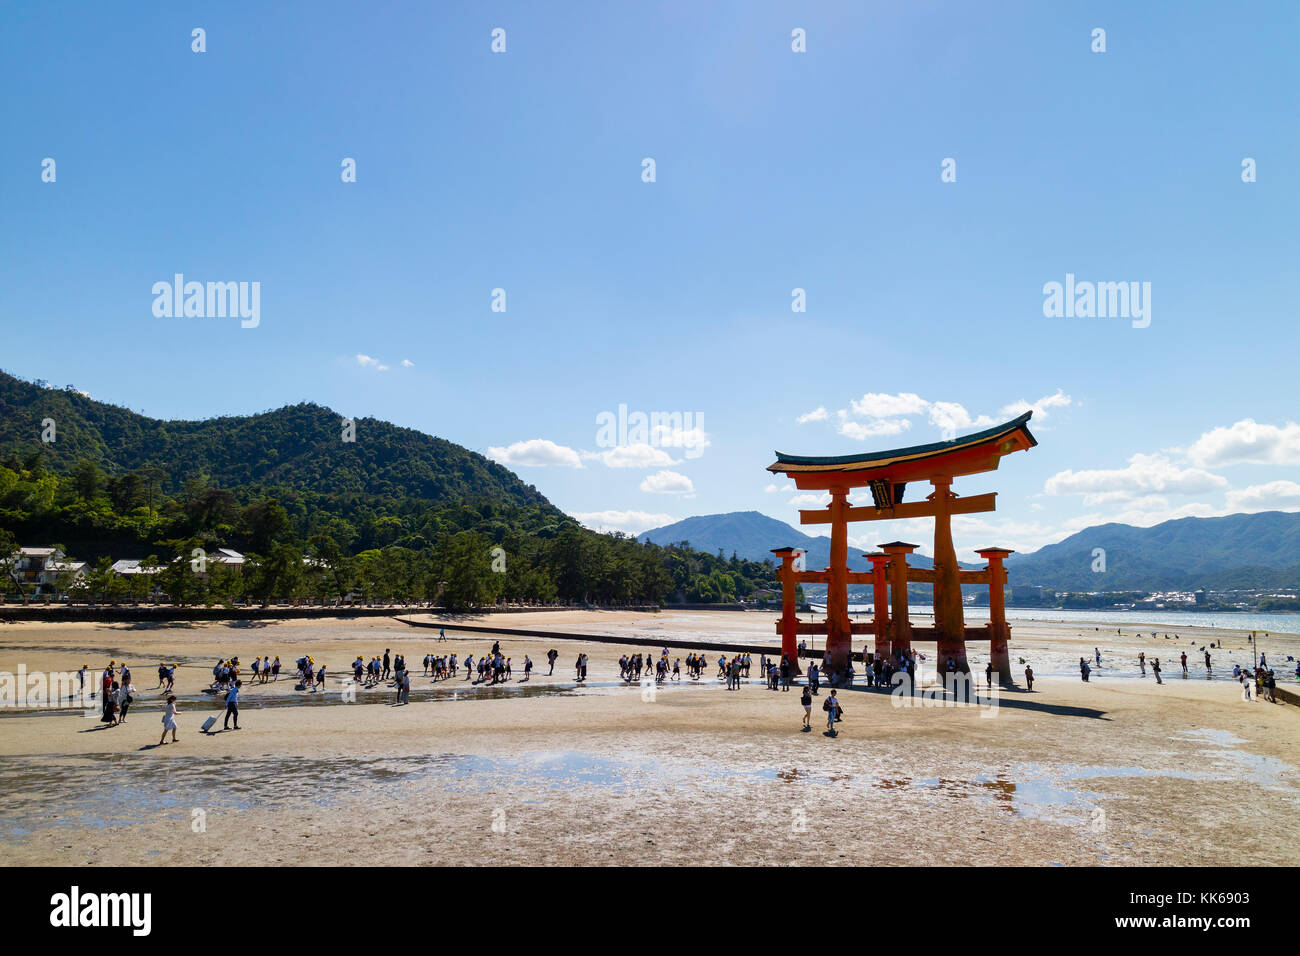 Miyajima - Japon, 26 mai 2017 : rouge torii du sanctuaire d'Itsukushima dans la mer à marée basse près de Miyajima avec beaucoup de touristes la marche sur la san Banque D'Images